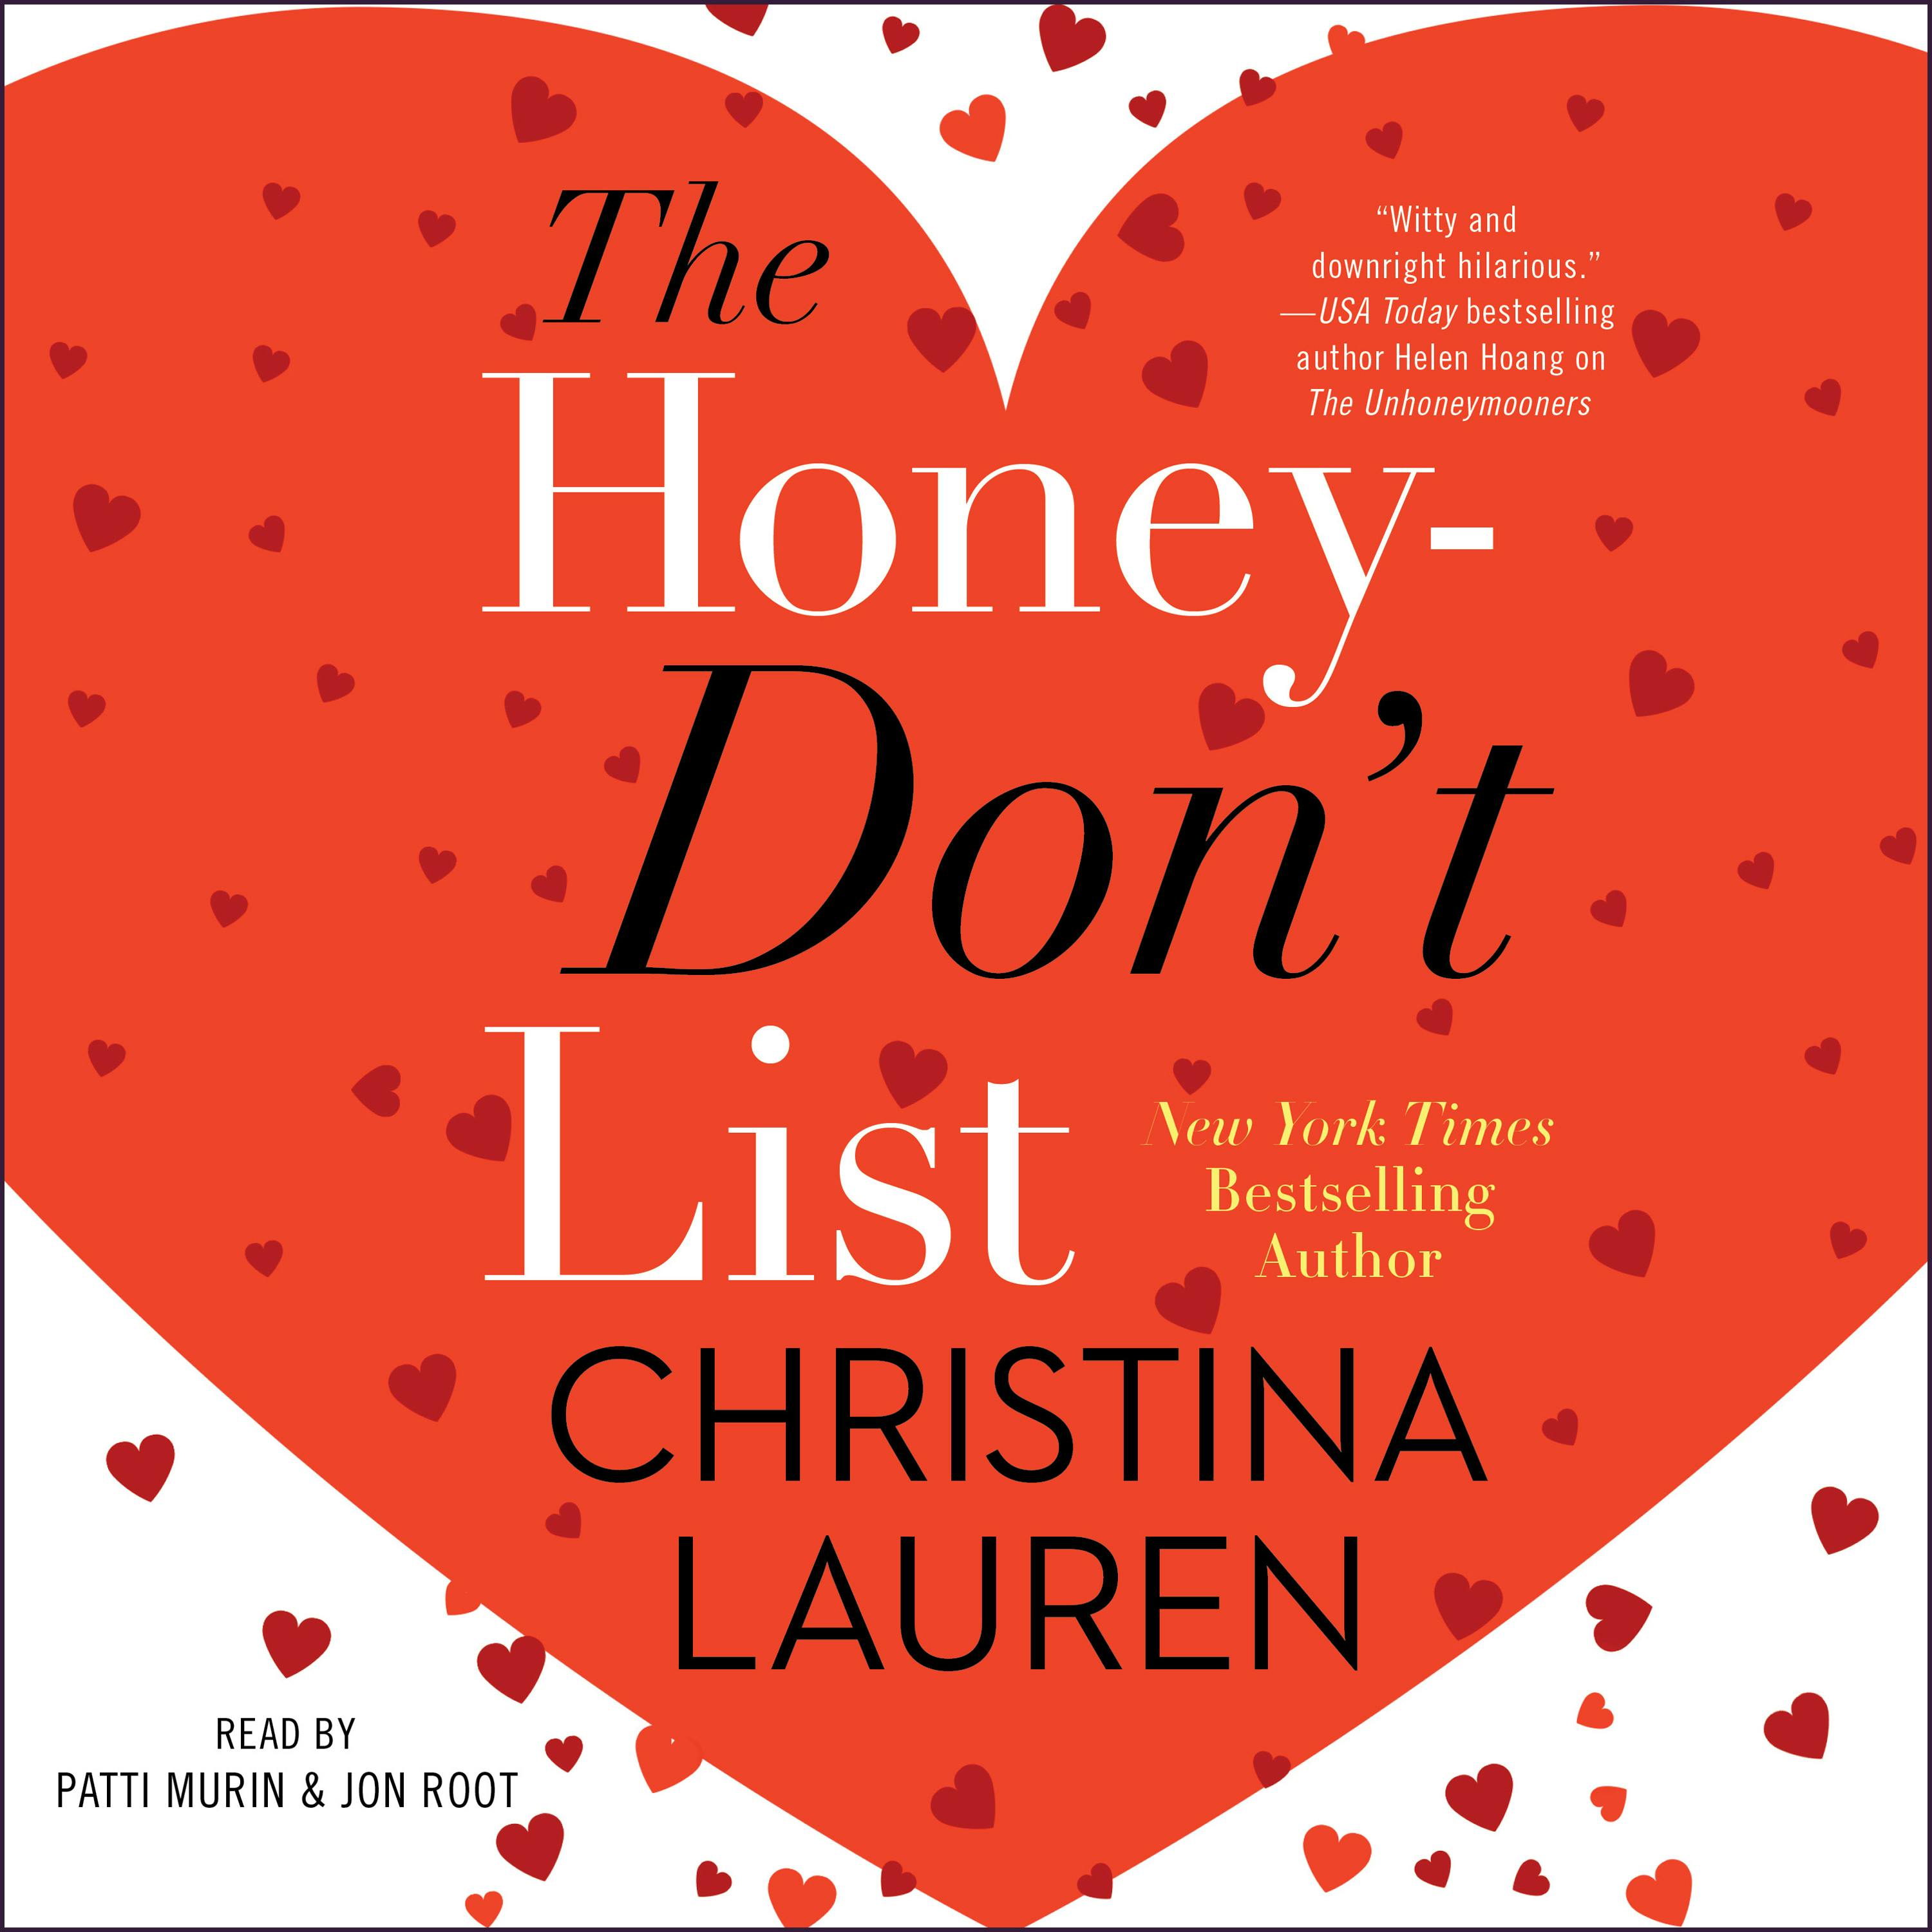 The Honey-Don't List - Christina Lauren